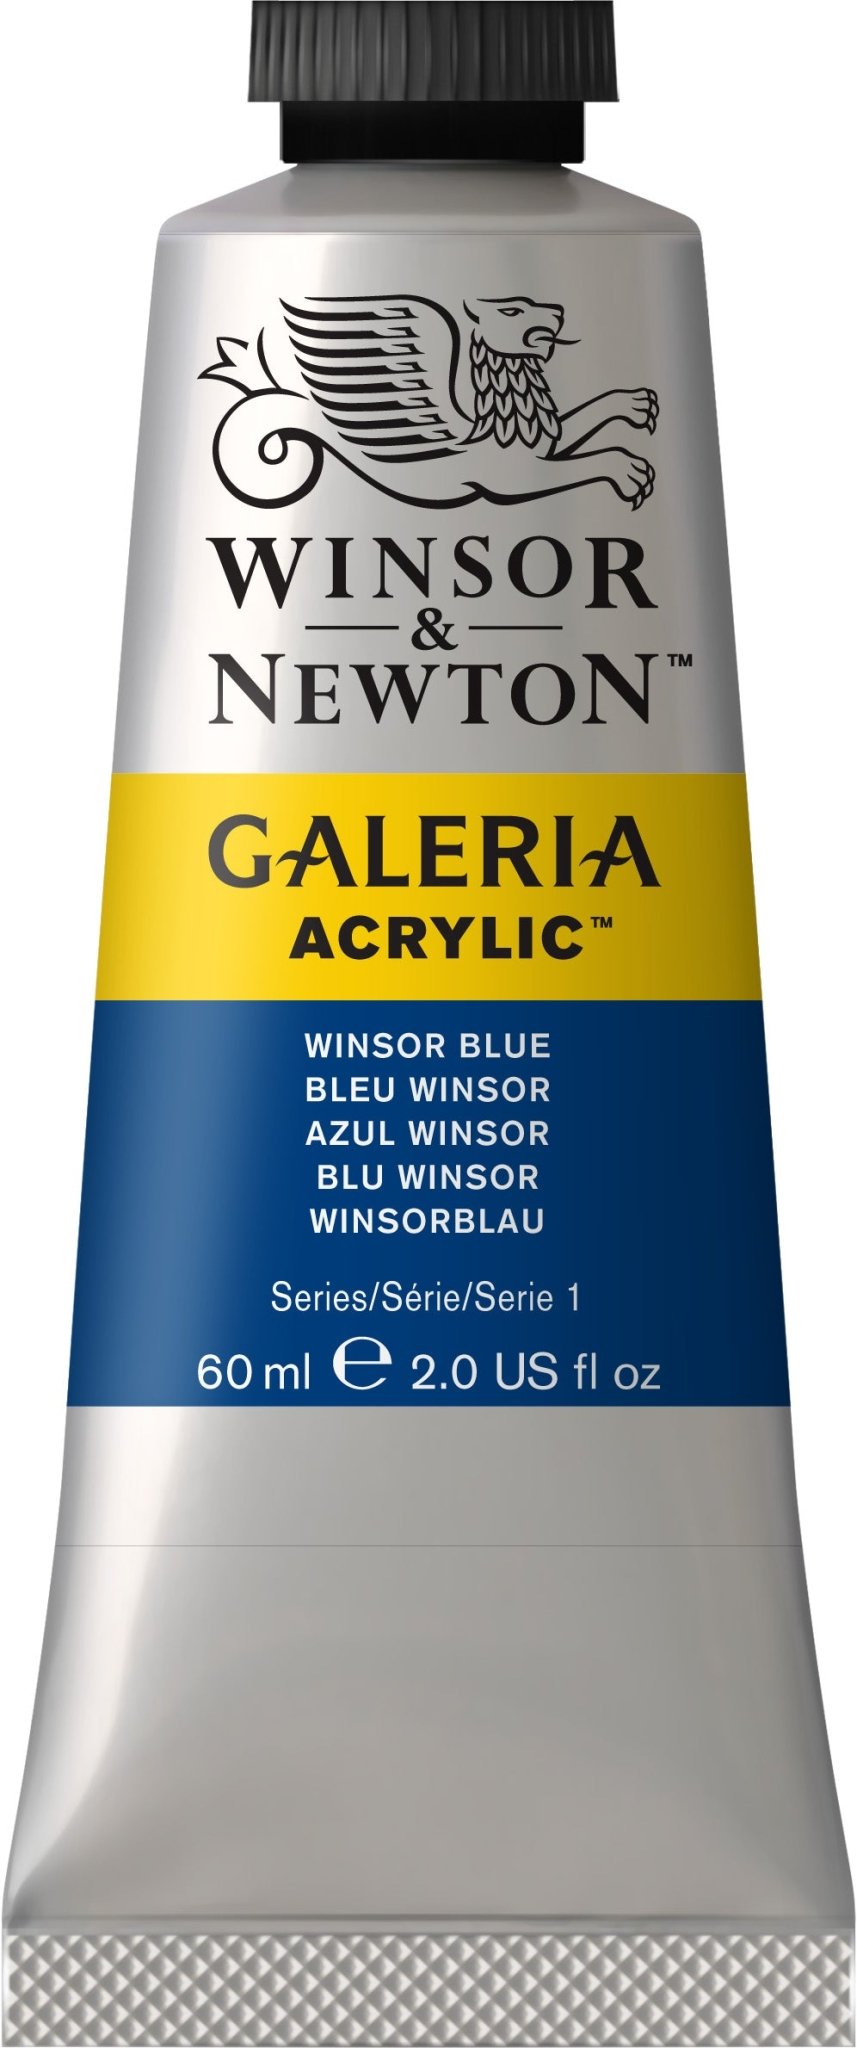 W & N Galeria Acrylic 60ml Winsor Blue - theartshop.com.au